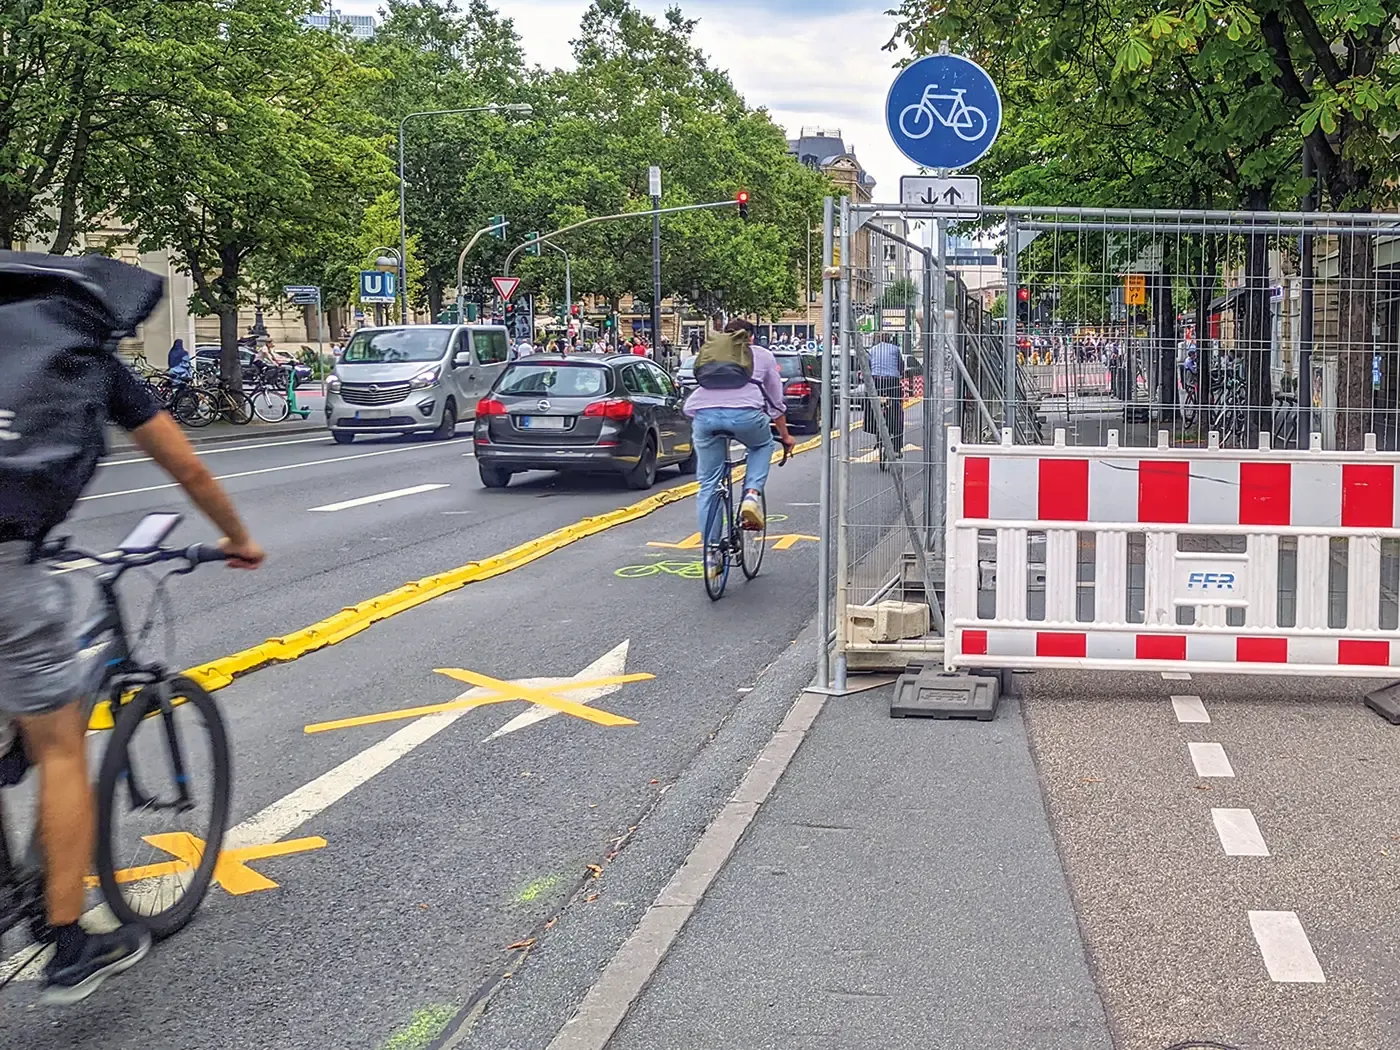 Bockenheimer Landstraße: Die meistberadelte Straße der Stadt verdient selbstverständlich eine ordentliche Führung für Radverkehr bei Baustellen, auch das war in der Vergangenheit leider nicht immer der Fall